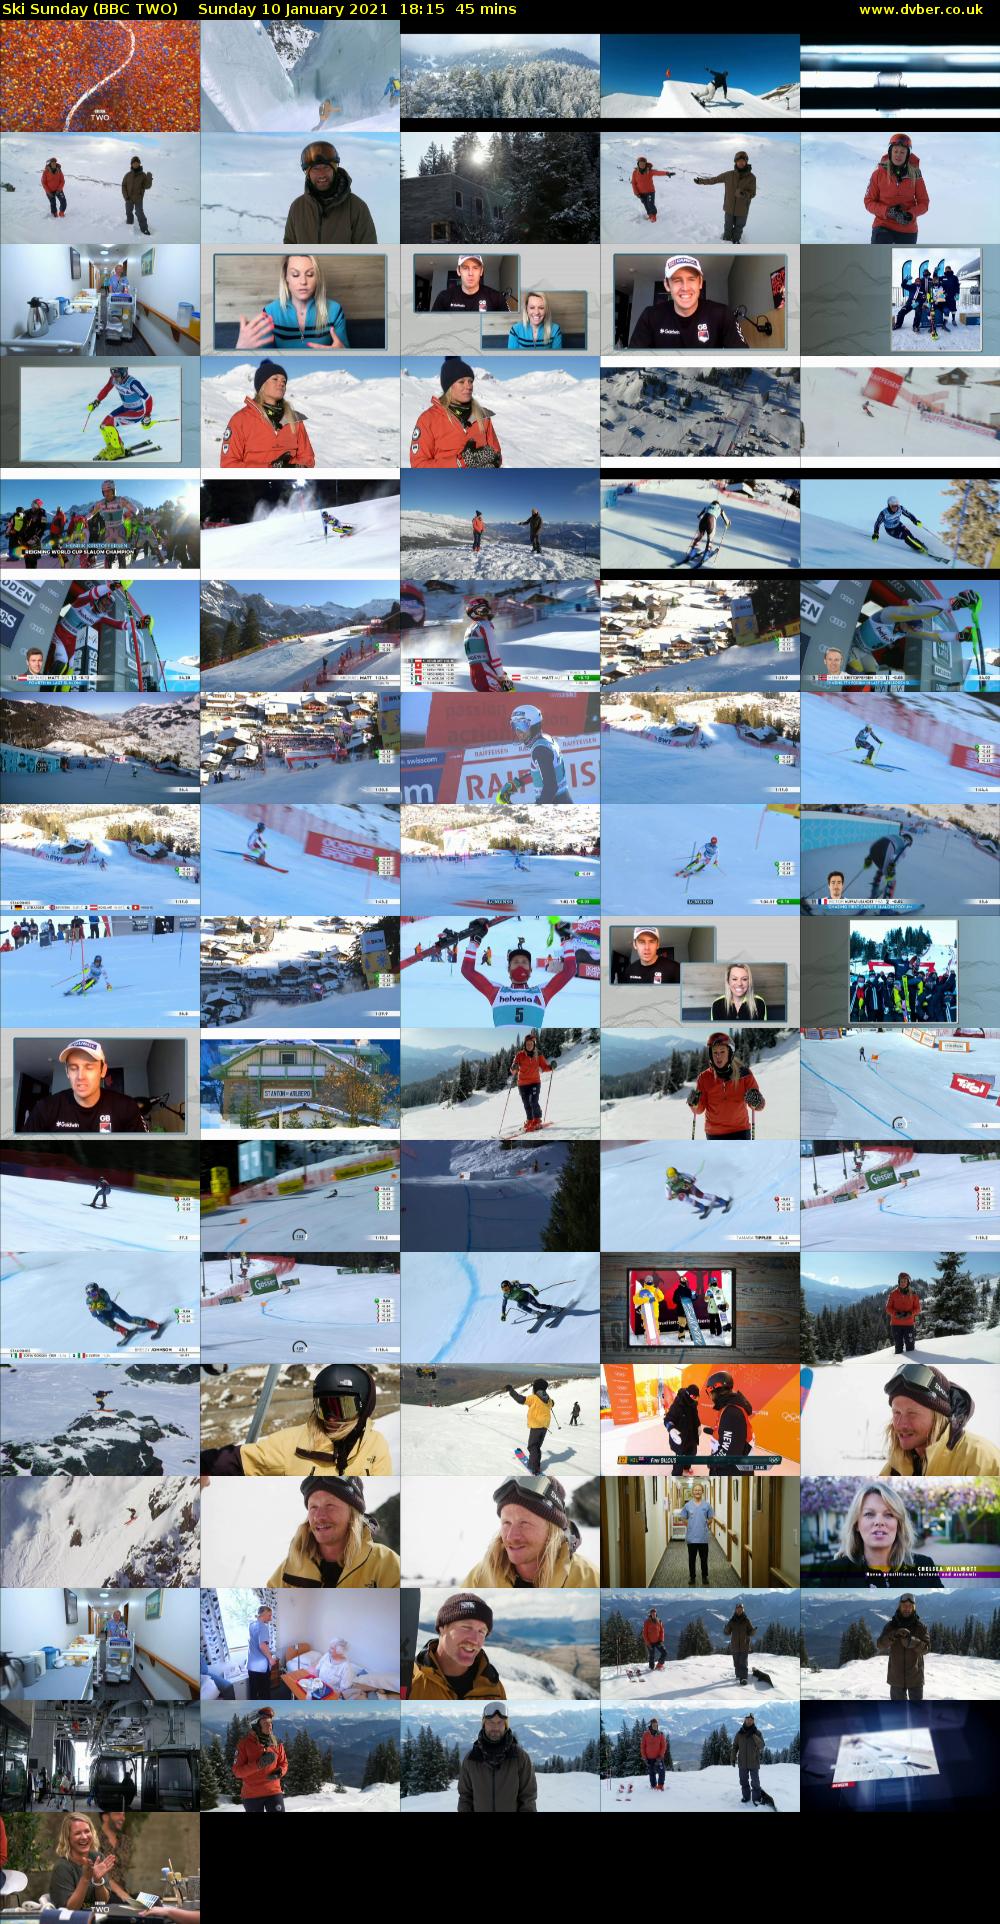 Ski Sunday (BBC TWO) Sunday 10 January 2021 18:15 - 19:00